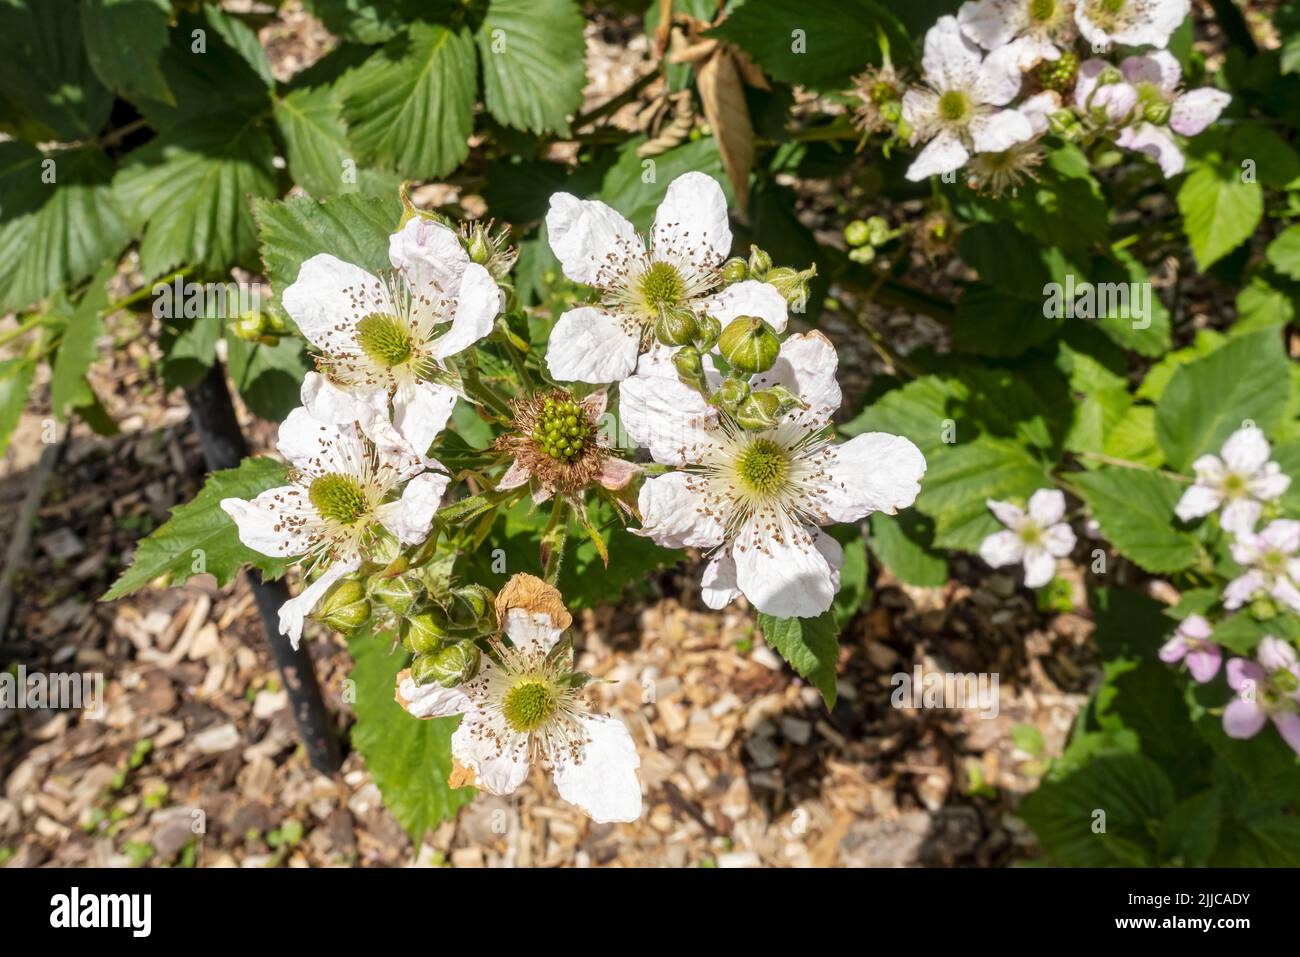 Gros plan de fleurs de mûre de brousse 'Black Satin' mûres brambles plante des fleurs florissantes dans un jardin début d'été Angleterre Royaume-Uni Grande-Bretagne Banque D'Images